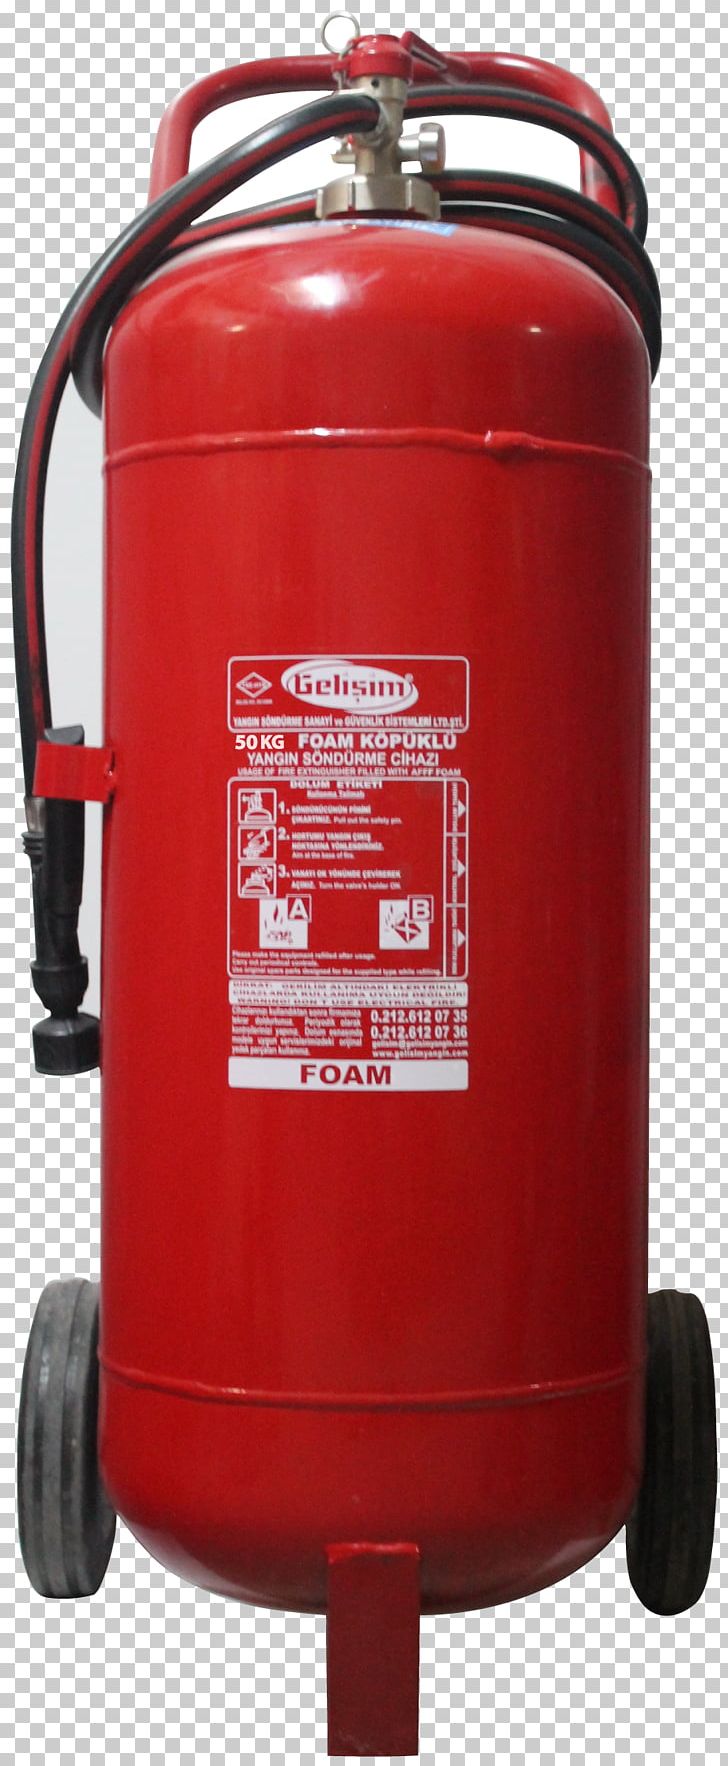 Fire Extinguishers Conflagration Kilogram Cylinder PNG, Clipart, Bar, Carbon Dioxide, Compressor, Conflagration, Cylinder Free PNG Download